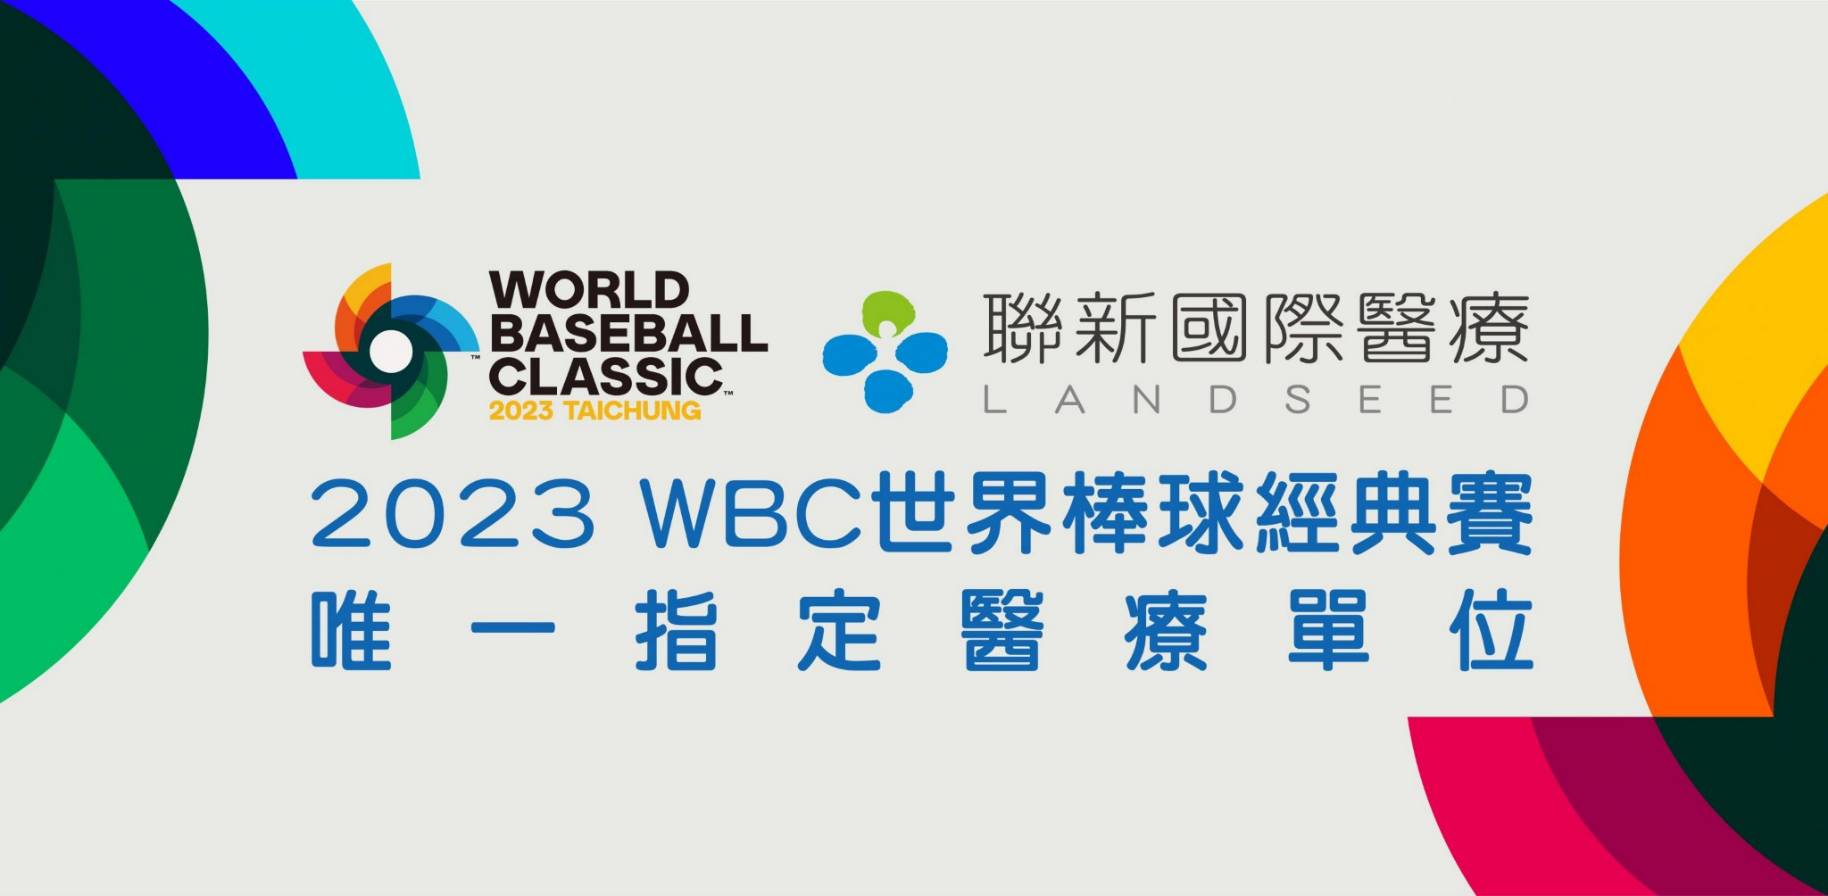 2023 WBC世界棒球經典賽唯一指定醫療單位